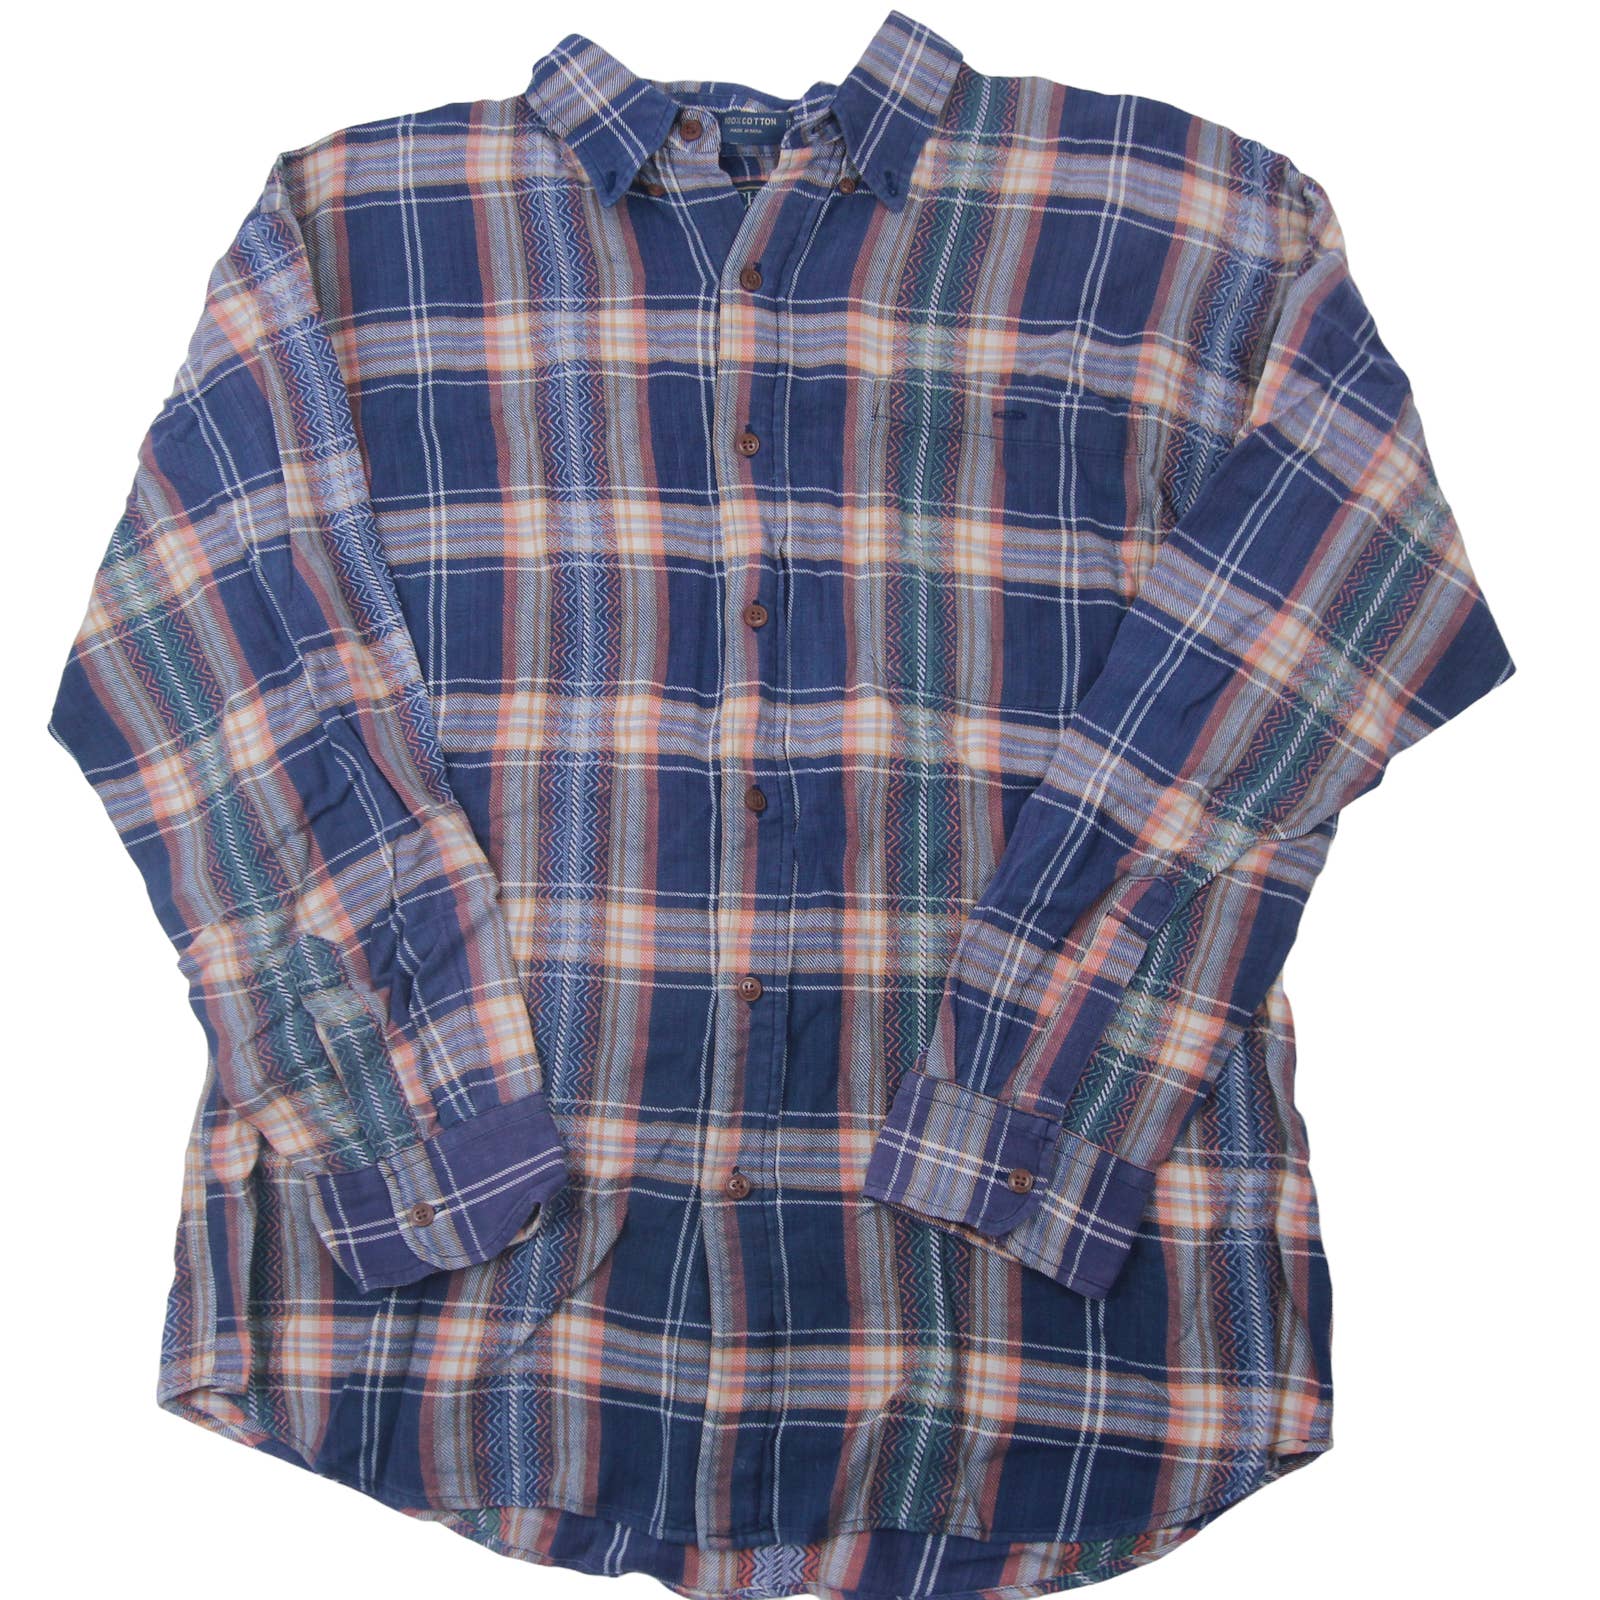 Vintage Men's Plaid Shirt Chaps Ralph Lauren Medium Size 